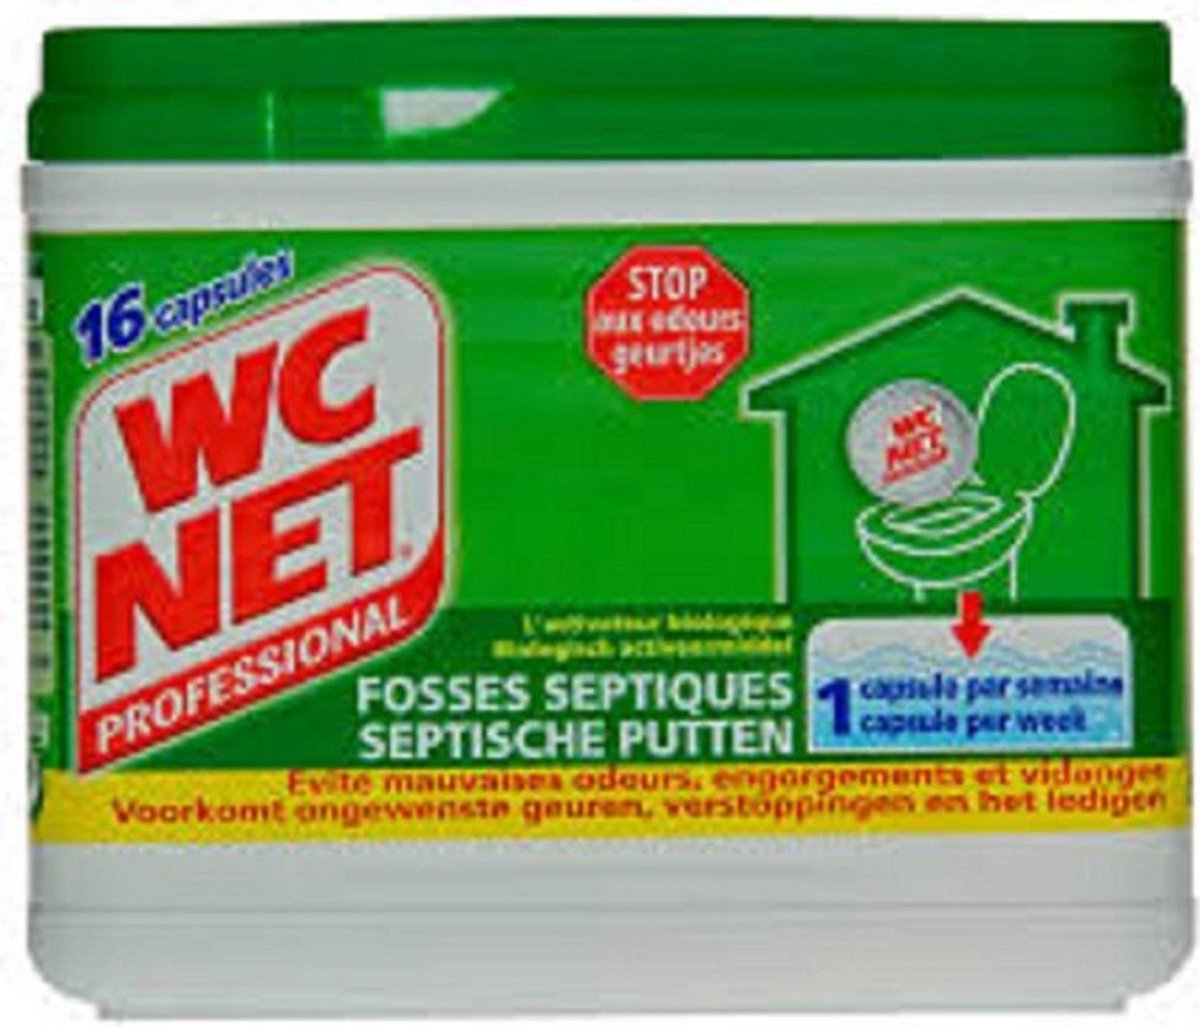 Activateur professionnel WC NET pour fosses septiques - 16 capsules